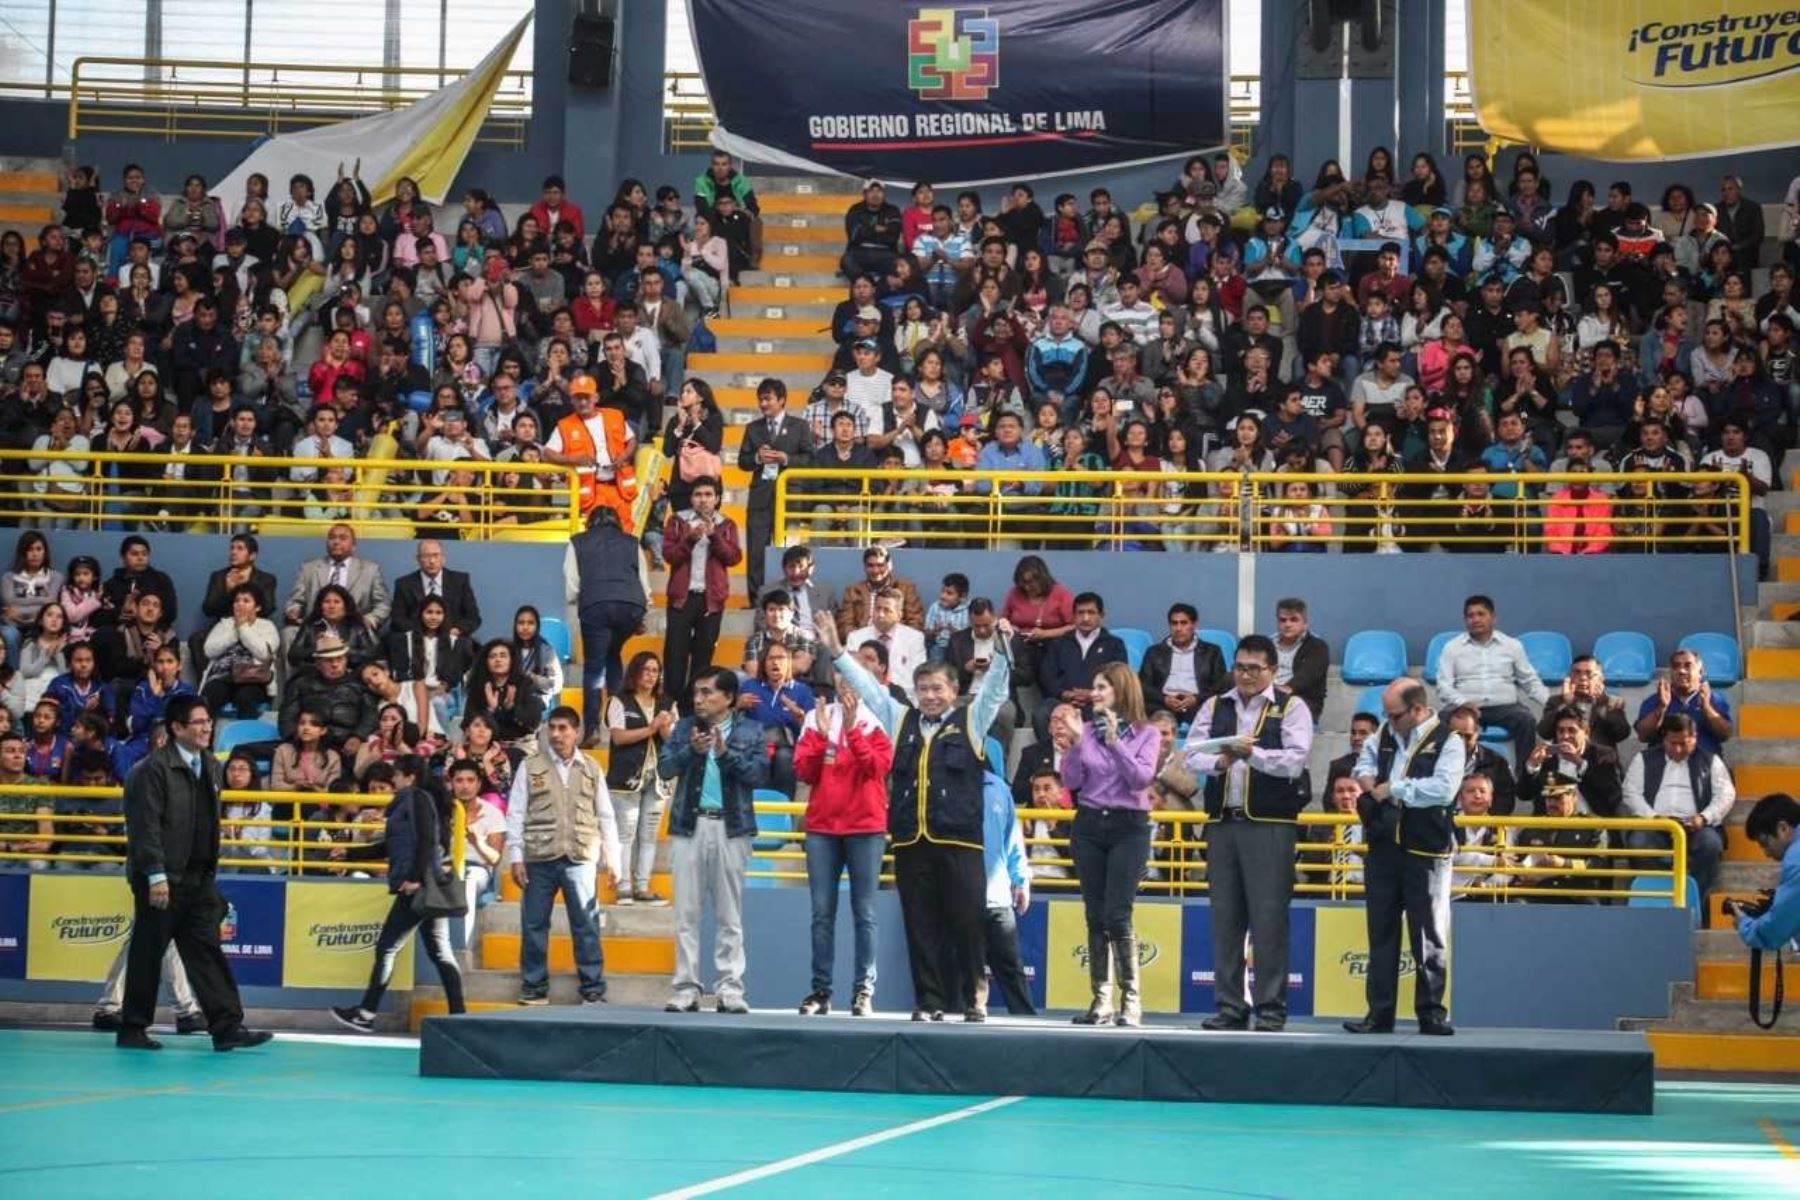 Gobernador regional de Lima, Nelson Chui Mejía, puso en funcionamiento moderna infraestructura del Coliseo Cerrado de Barranca.Asistió la vicepresidenta de la República, Mercedes Aráoz, así como la destacada deportista Natalia Málaga.